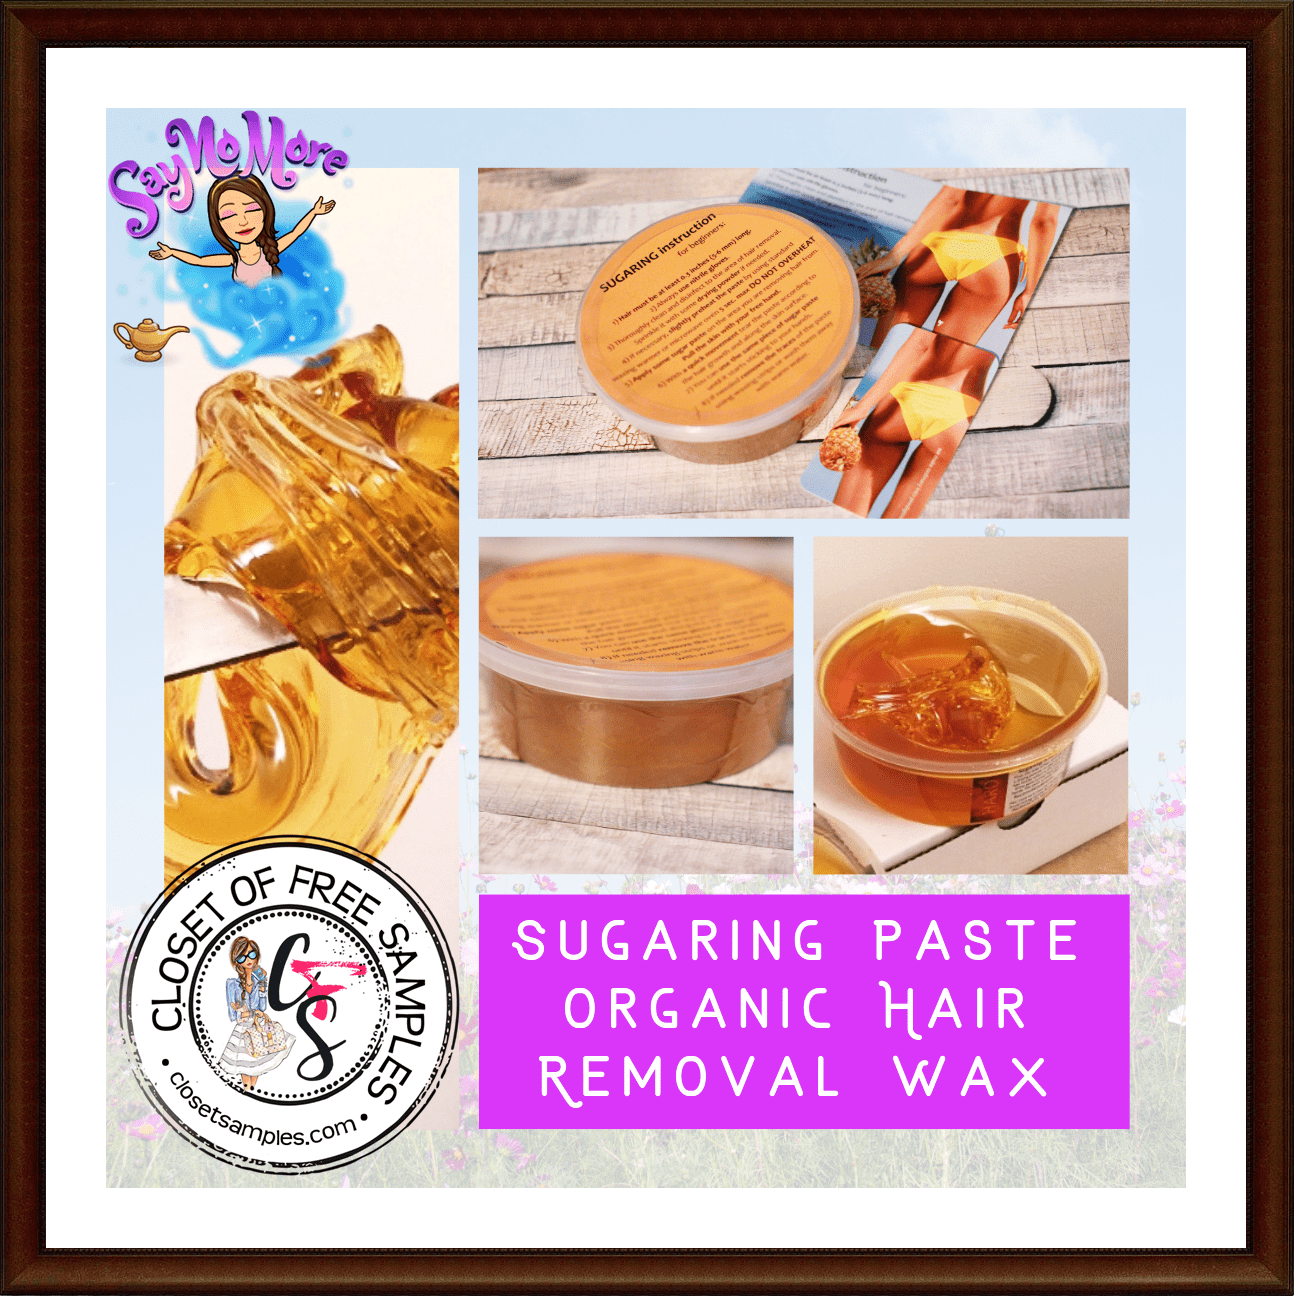 Sugaring-Paste-Organic-Hair-Removal-Wax-Review-Closetsamples.png